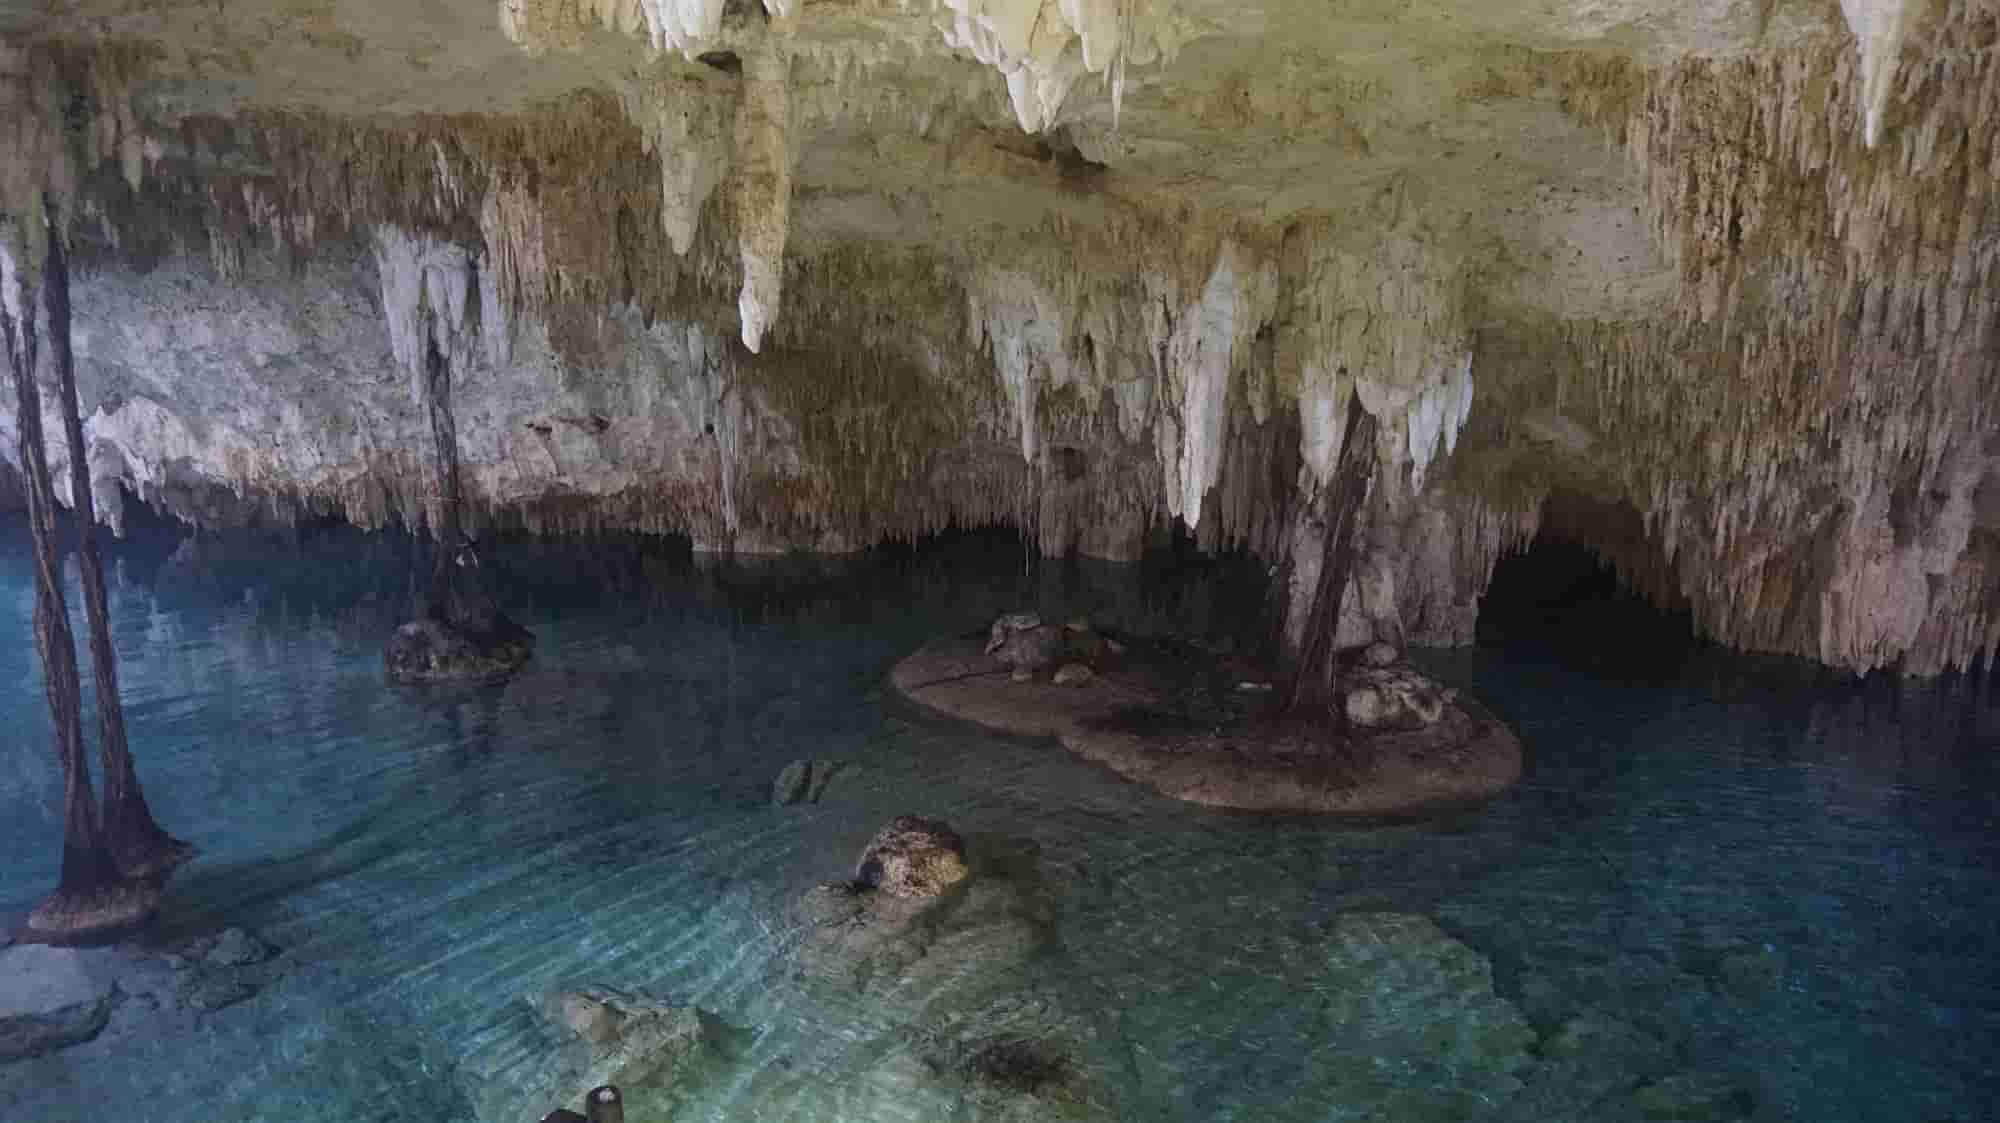 Cenote Sac Actun à l'intérieur